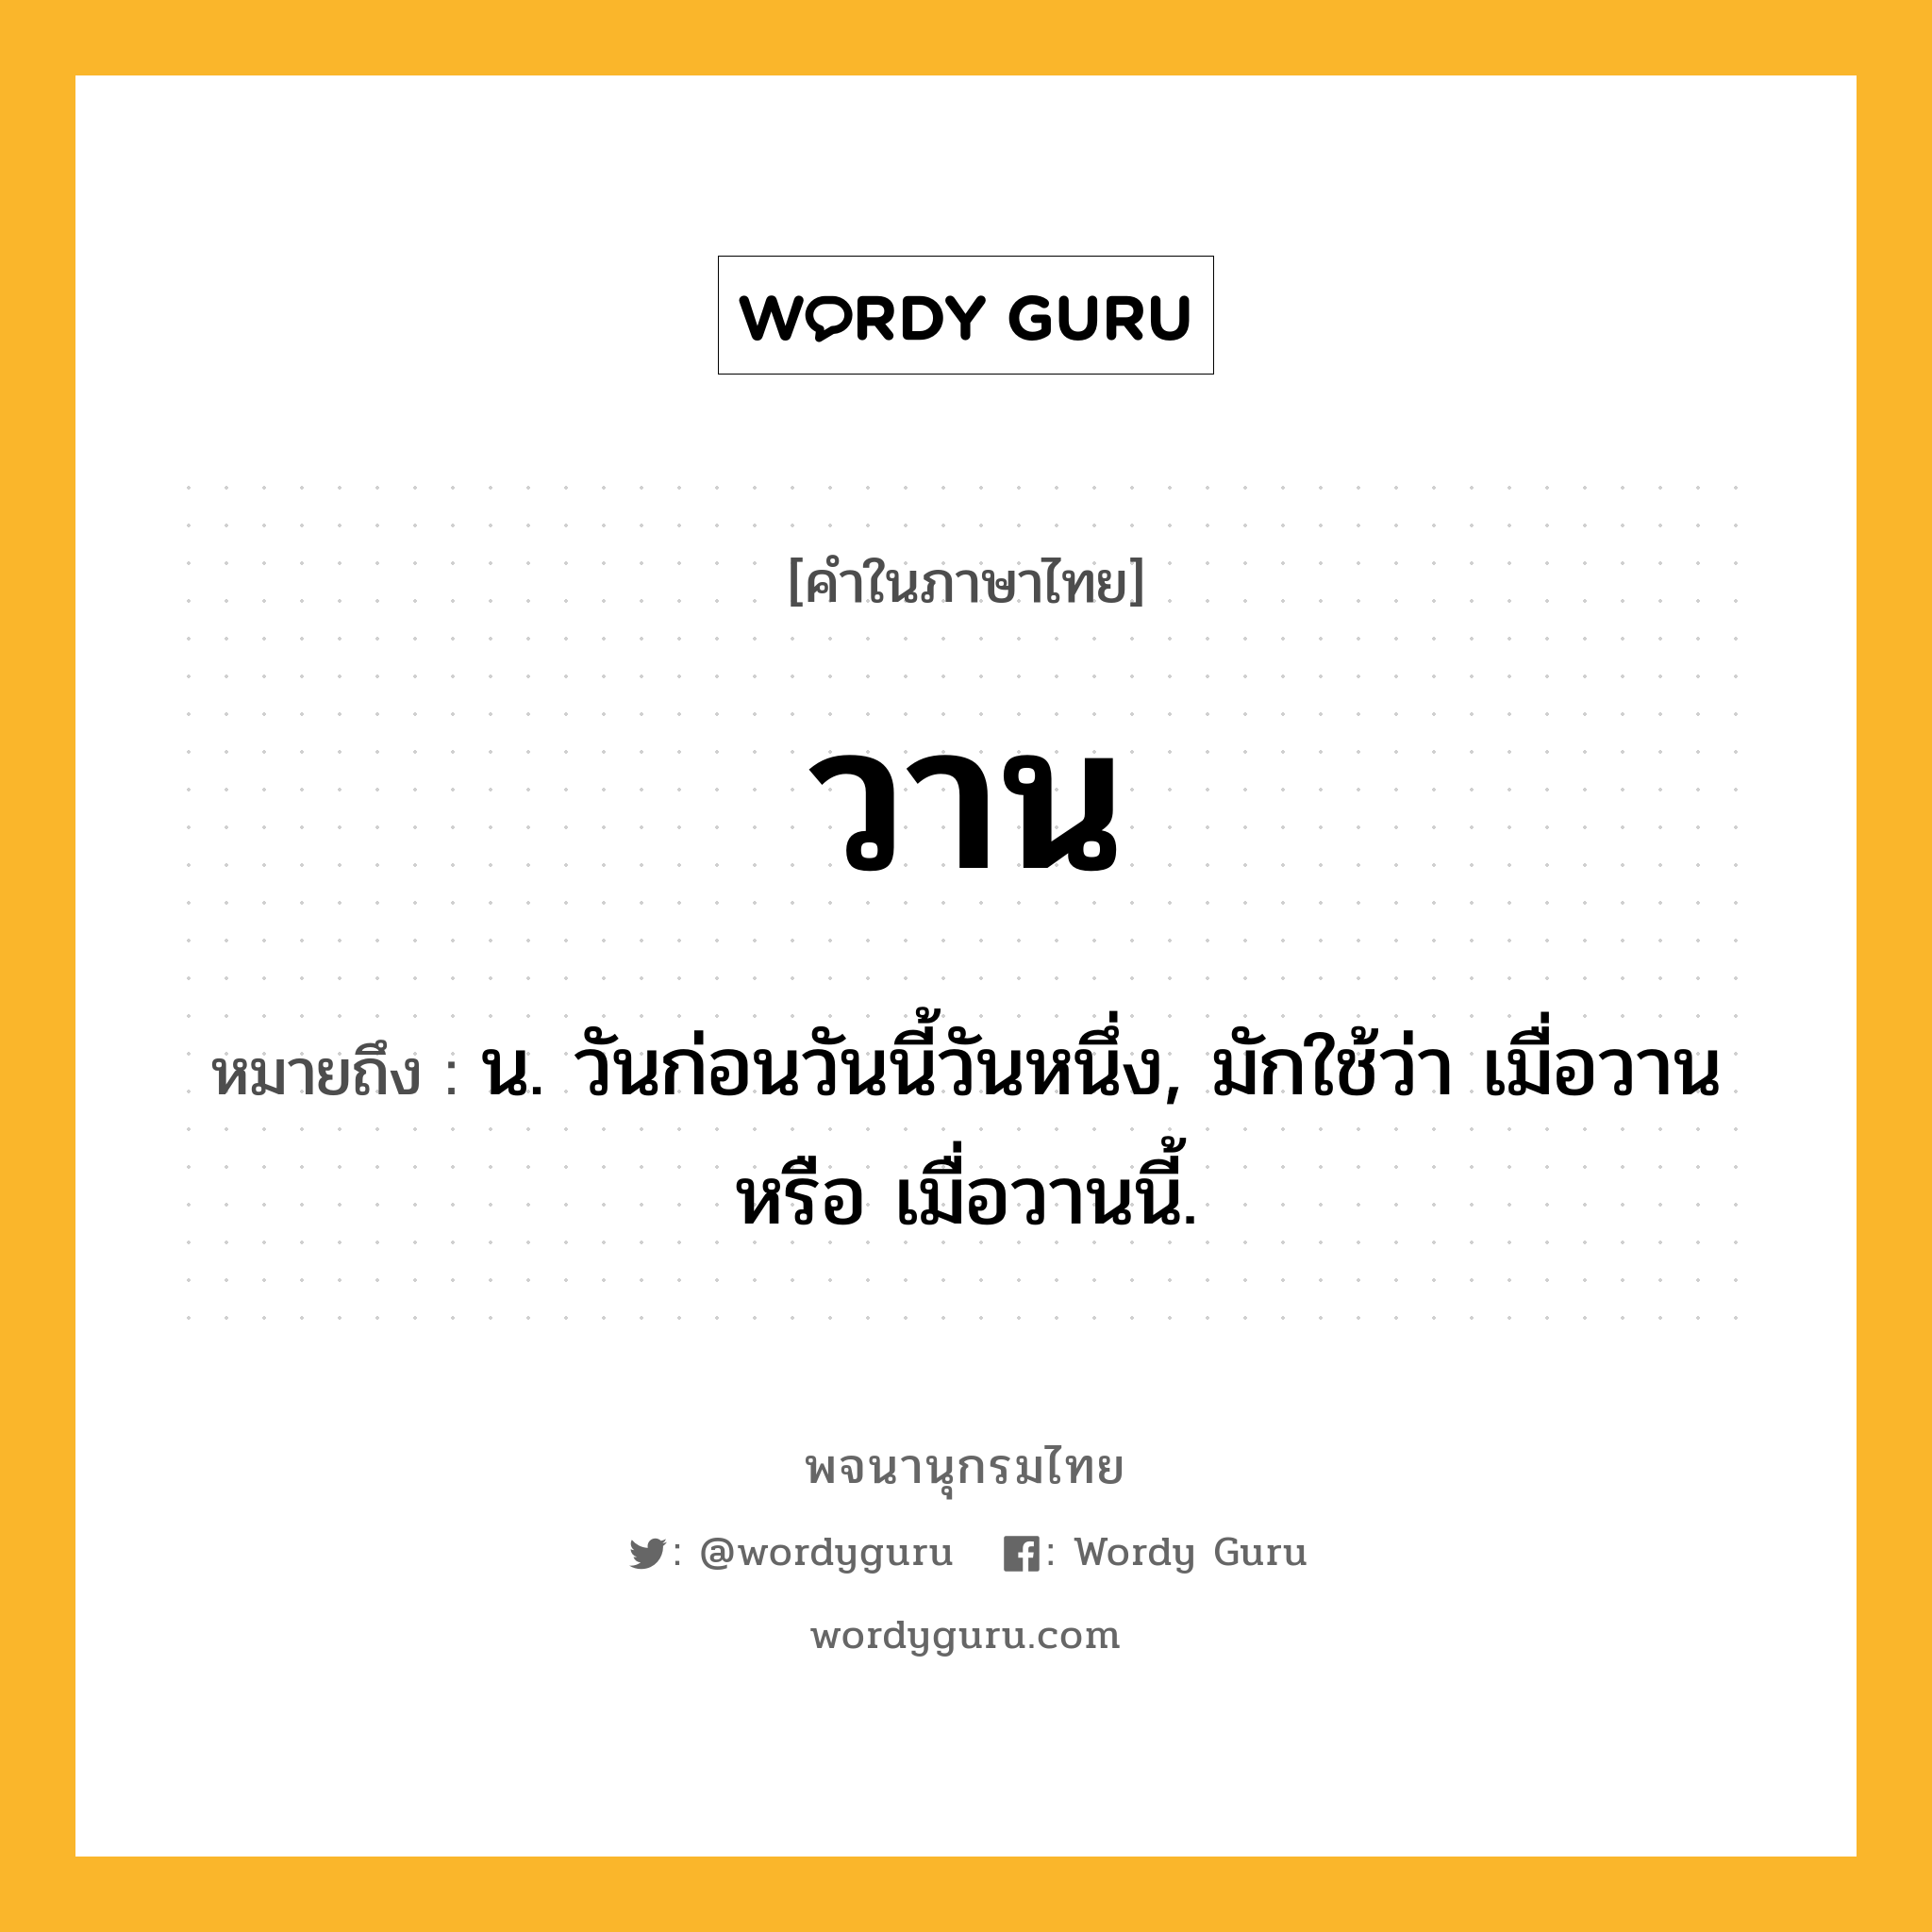 วาน ความหมาย หมายถึงอะไร?, คำในภาษาไทย วาน หมายถึง น. วันก่อนวันนี้วันหนึ่ง, มักใช้ว่า เมื่อวาน หรือ เมื่อวานนี้.